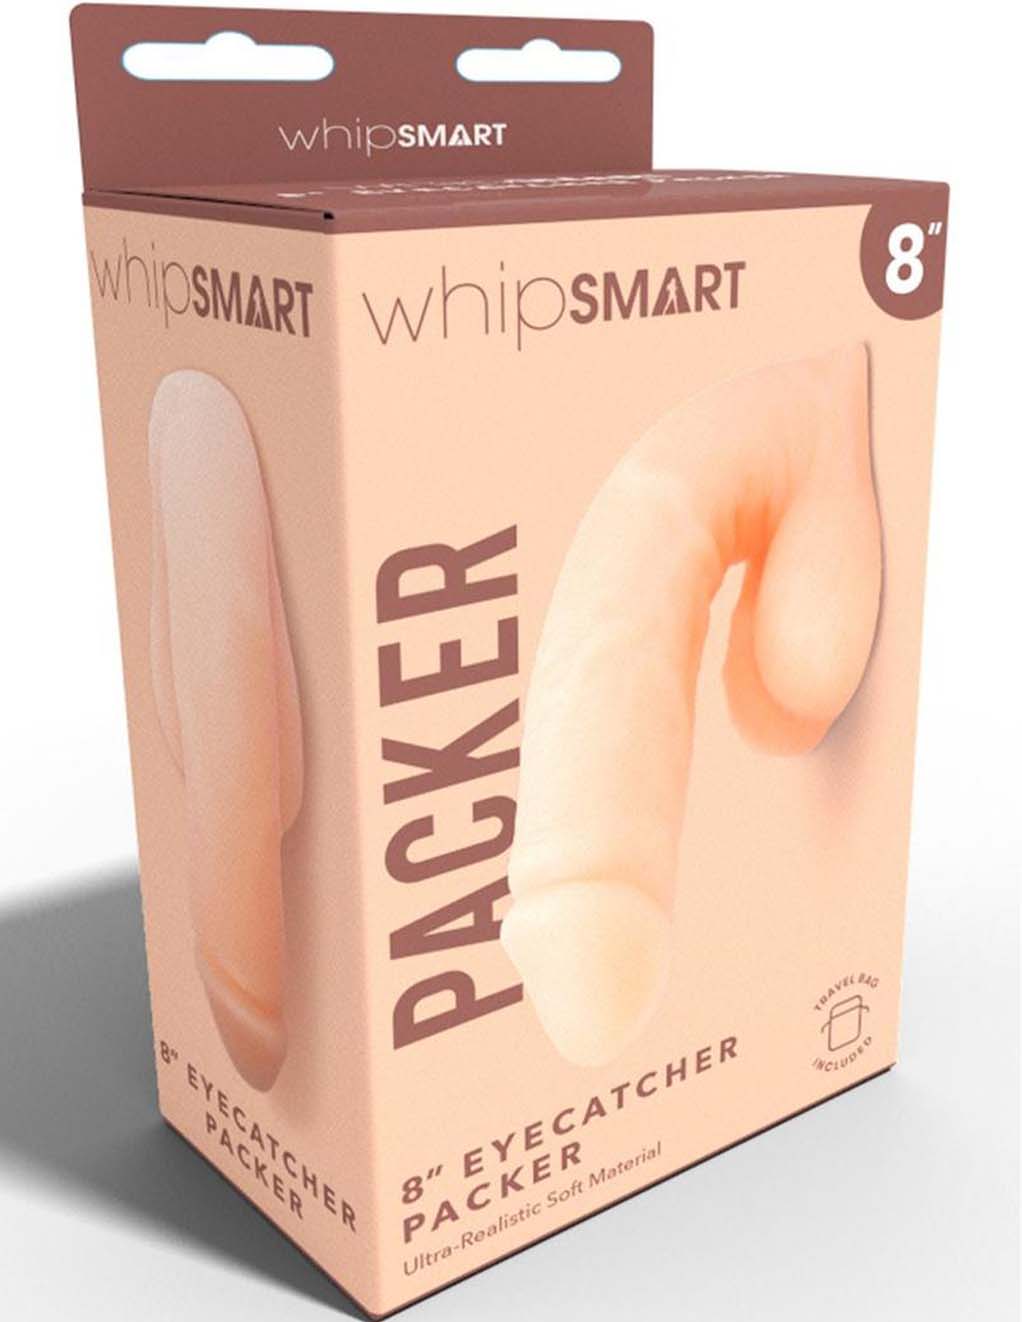 WhipSmart 8" Eyecatching Packer- Vanilla- Box